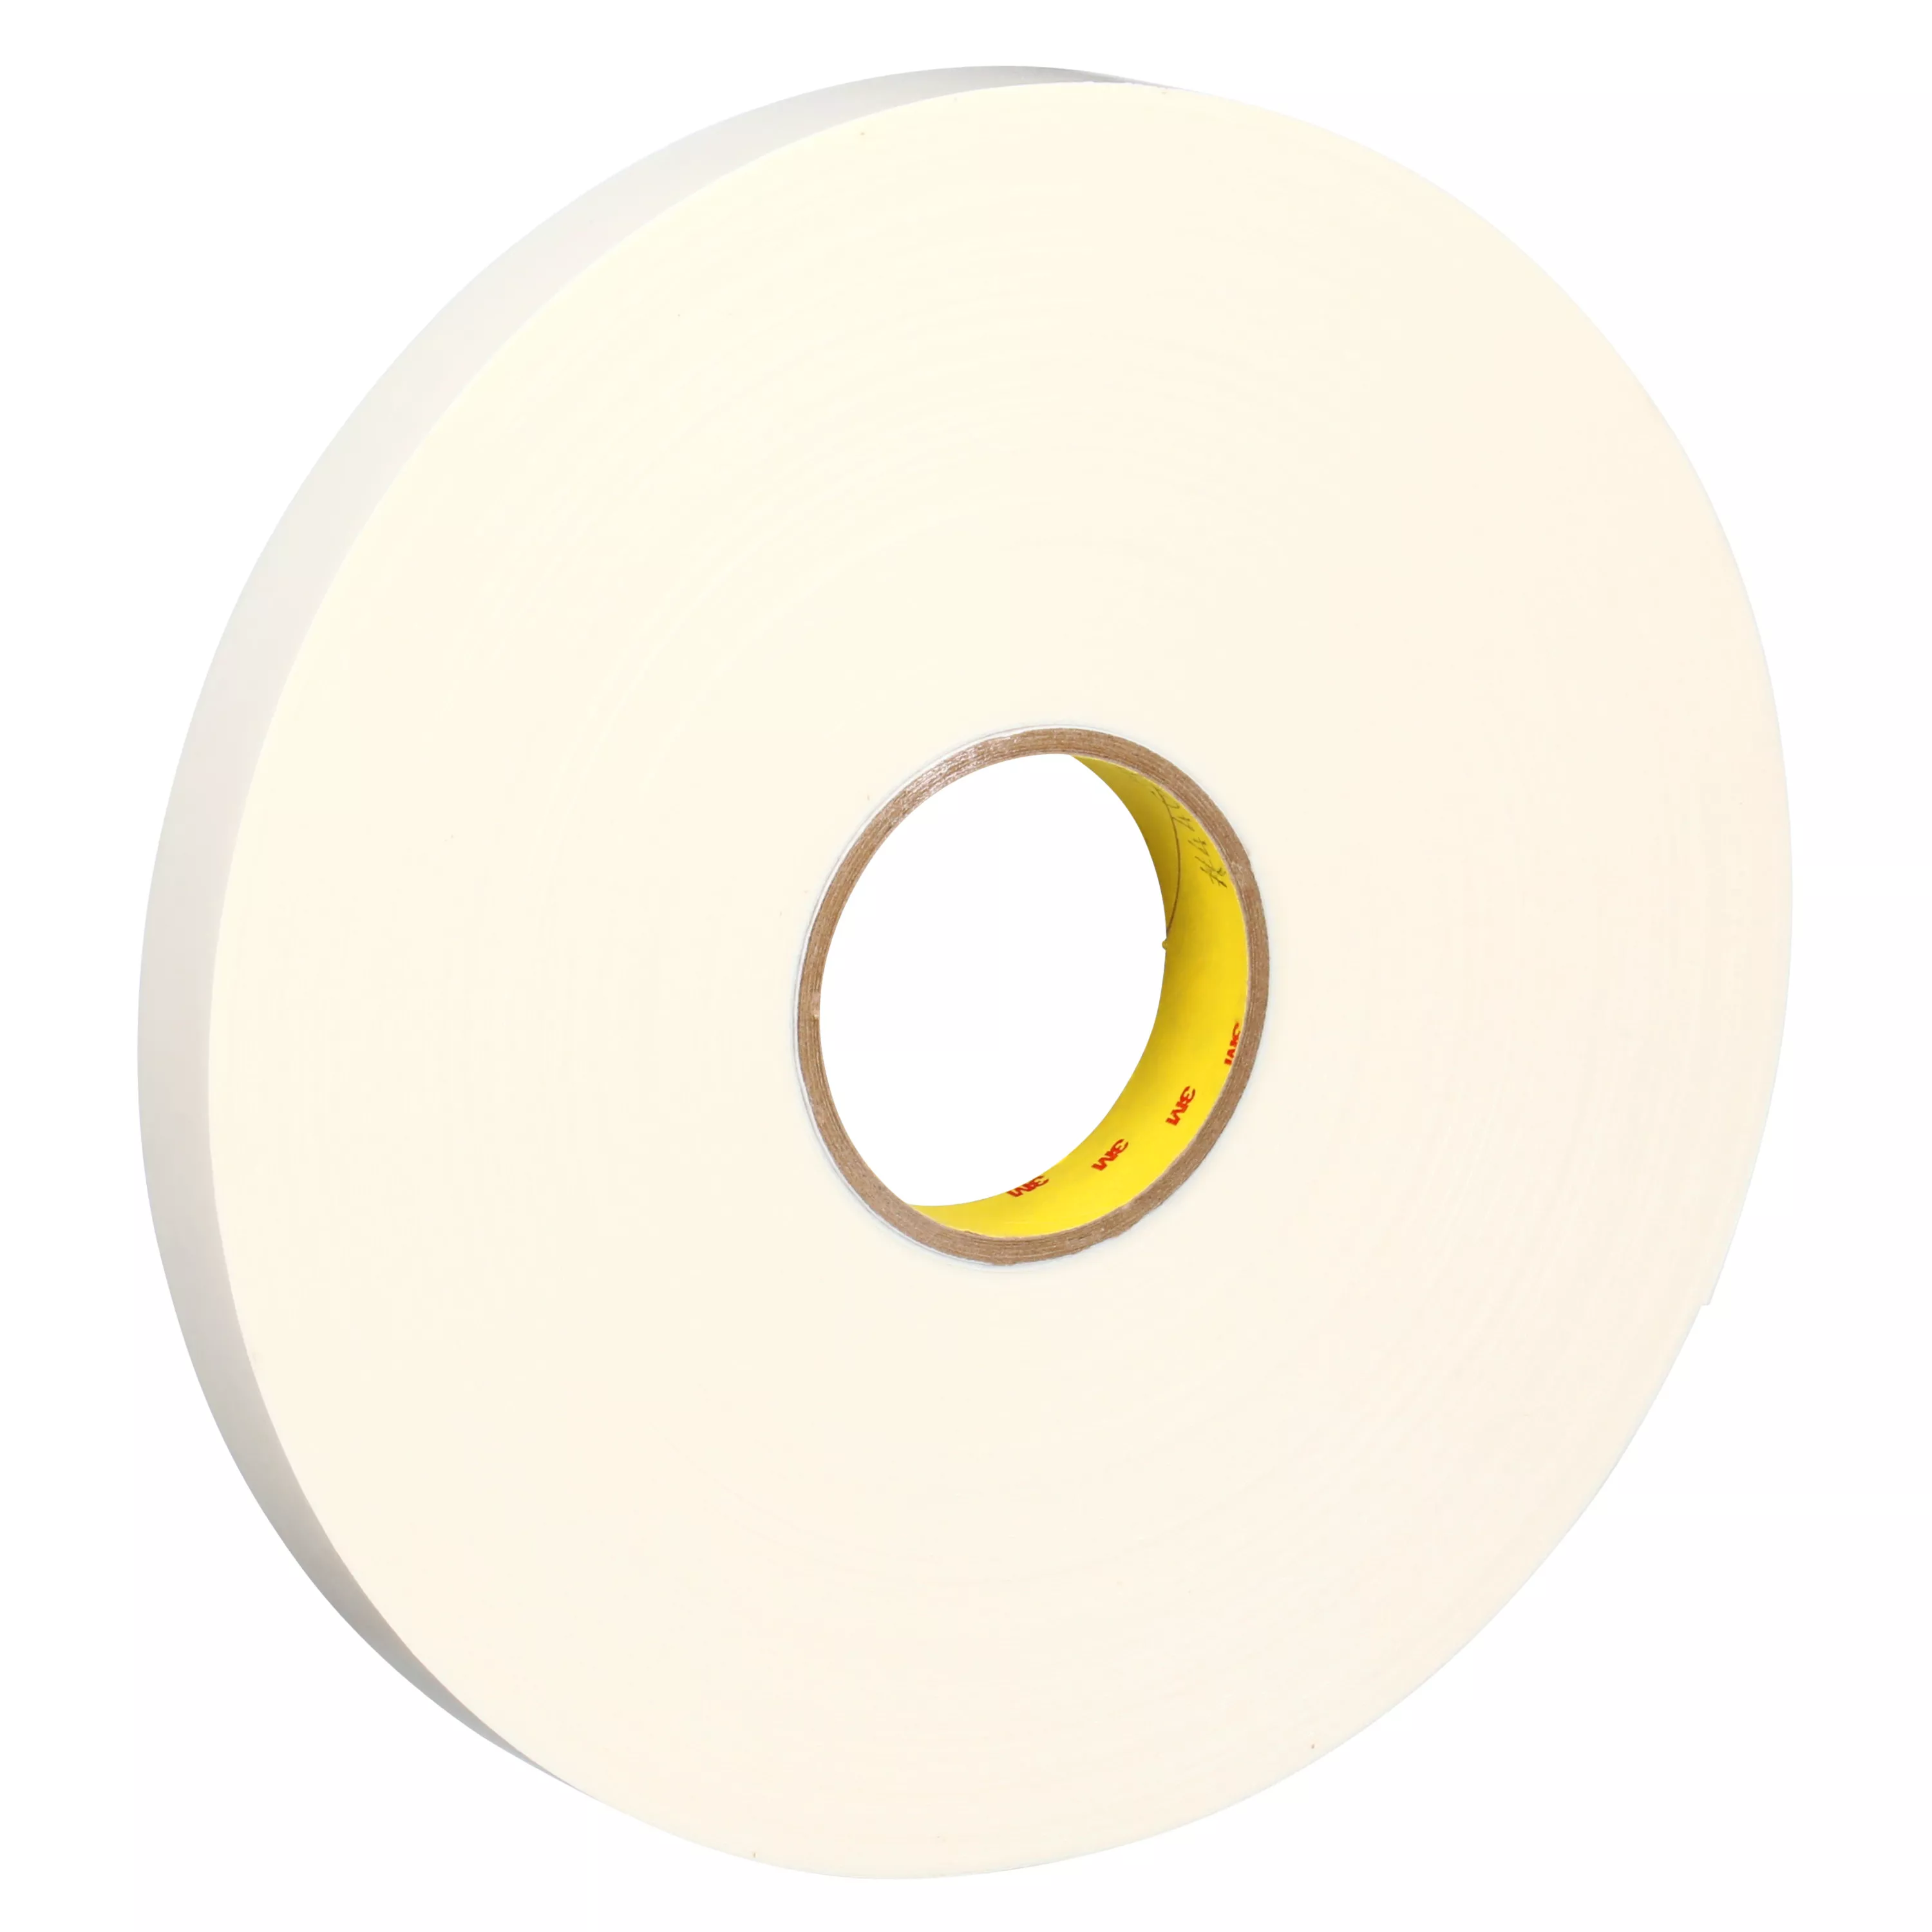 3M™ Double Coated Polyethylene Foam Tape 4462, White, 1 in x 72 yd, 31
mil, 9 Roll/Case